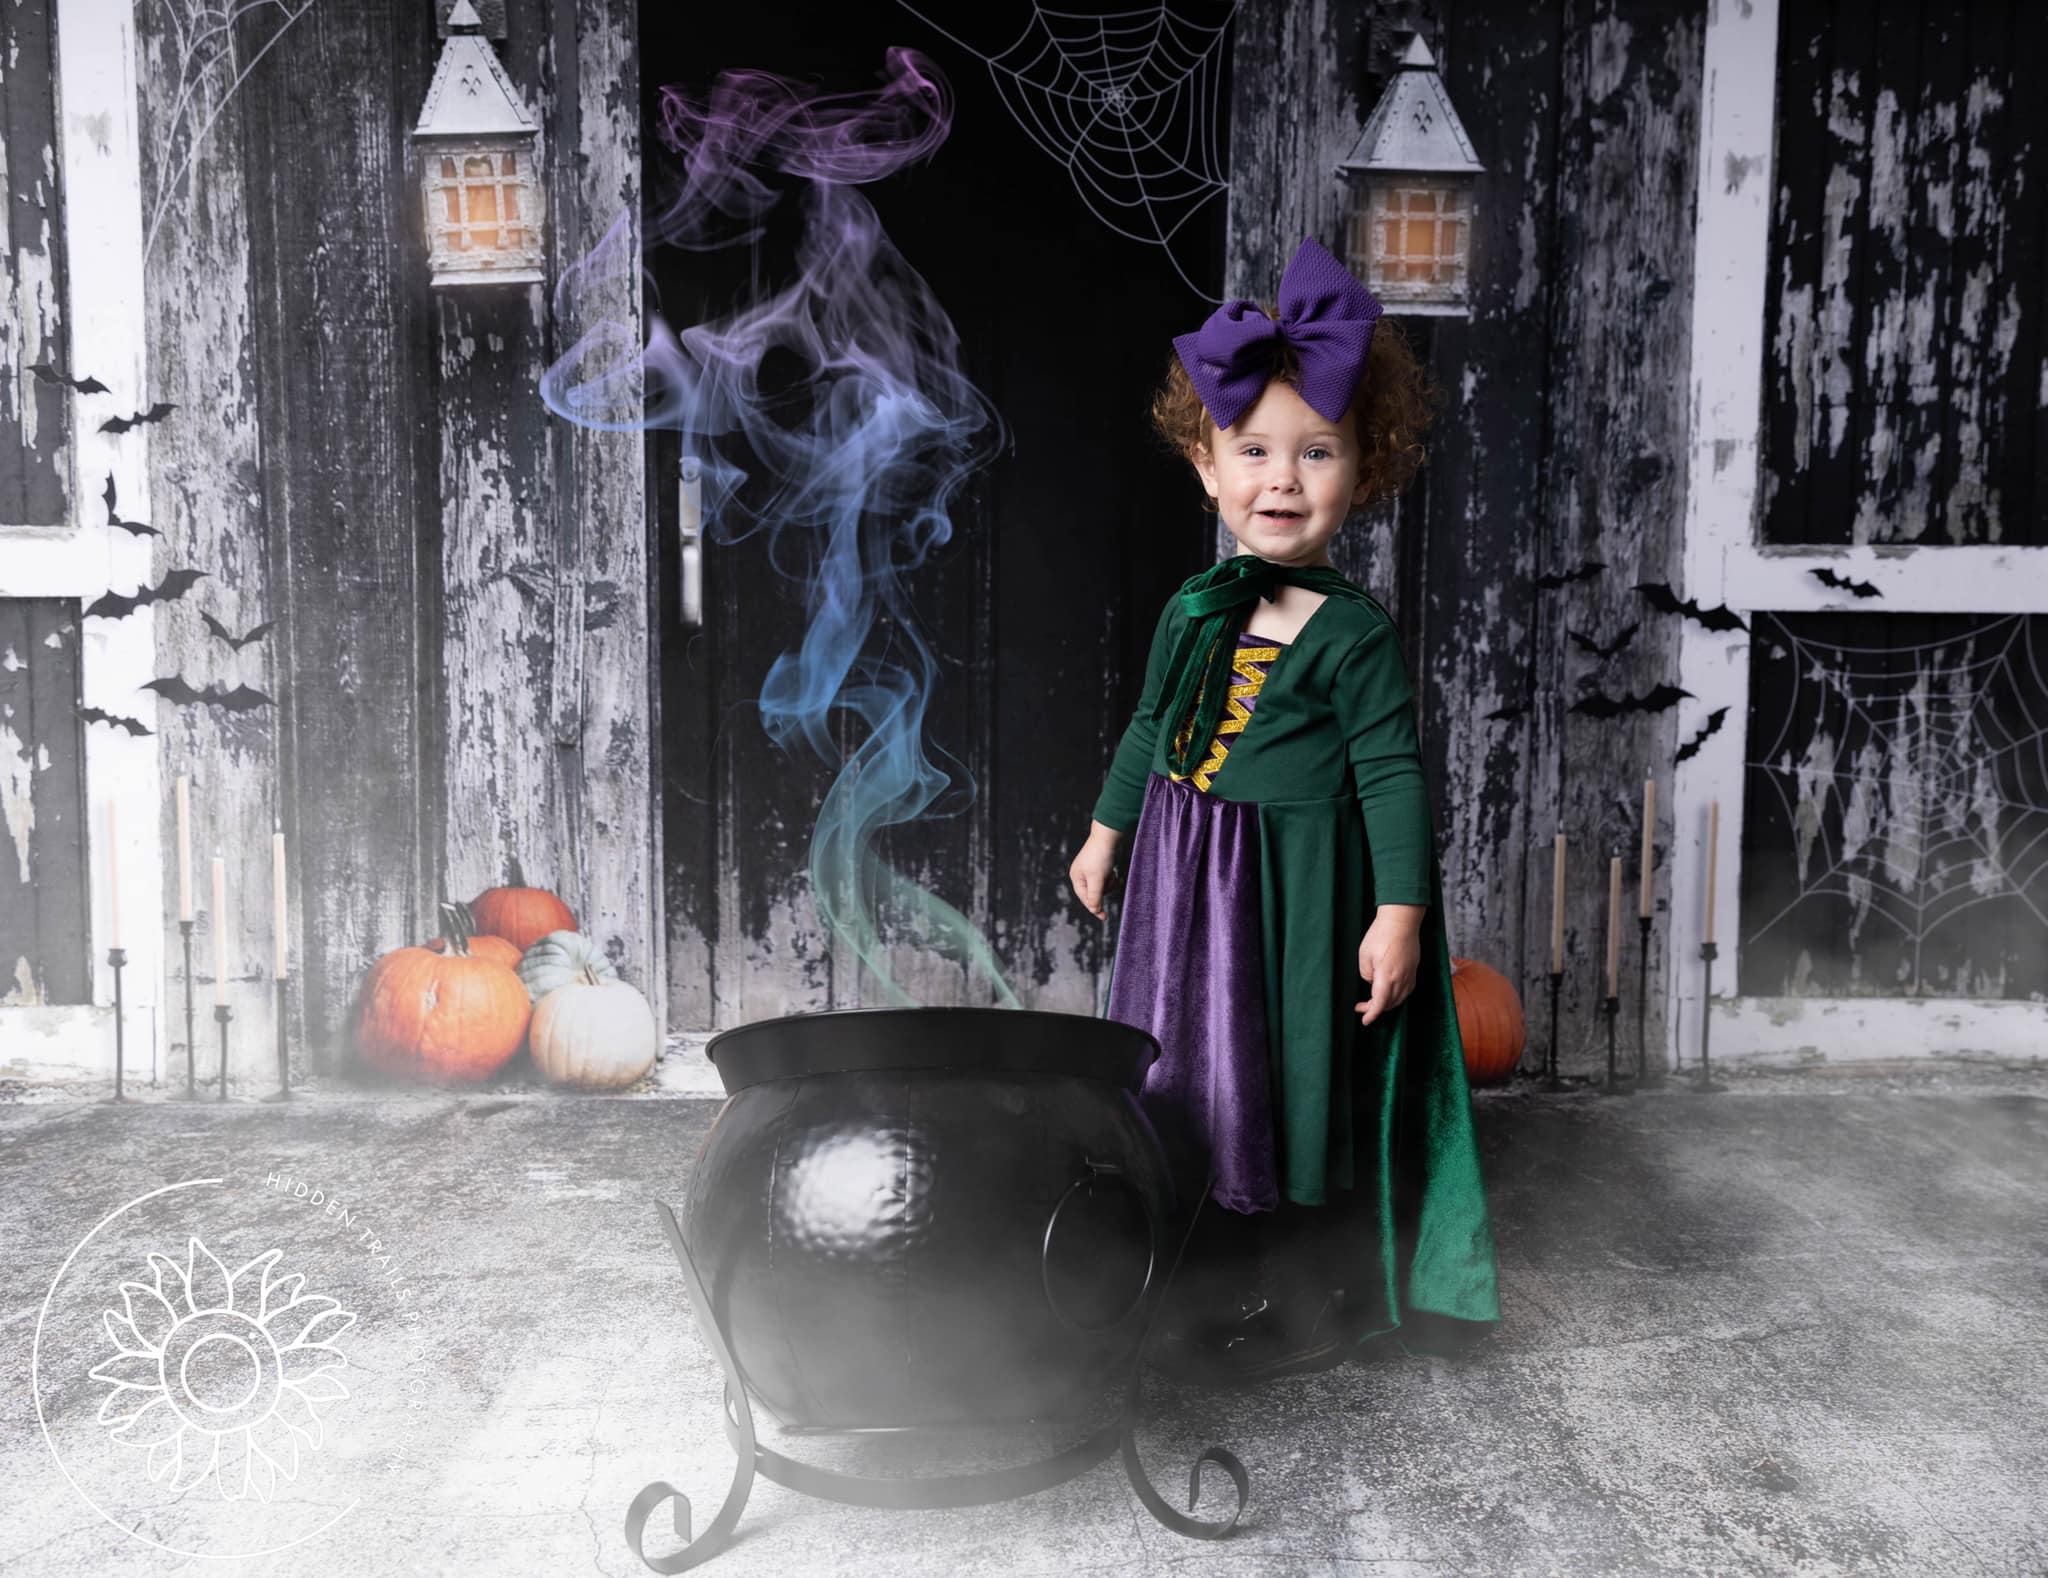 Kate Gespenstische Halloween Scheune Hintergrund von Mandy Ringe Photography